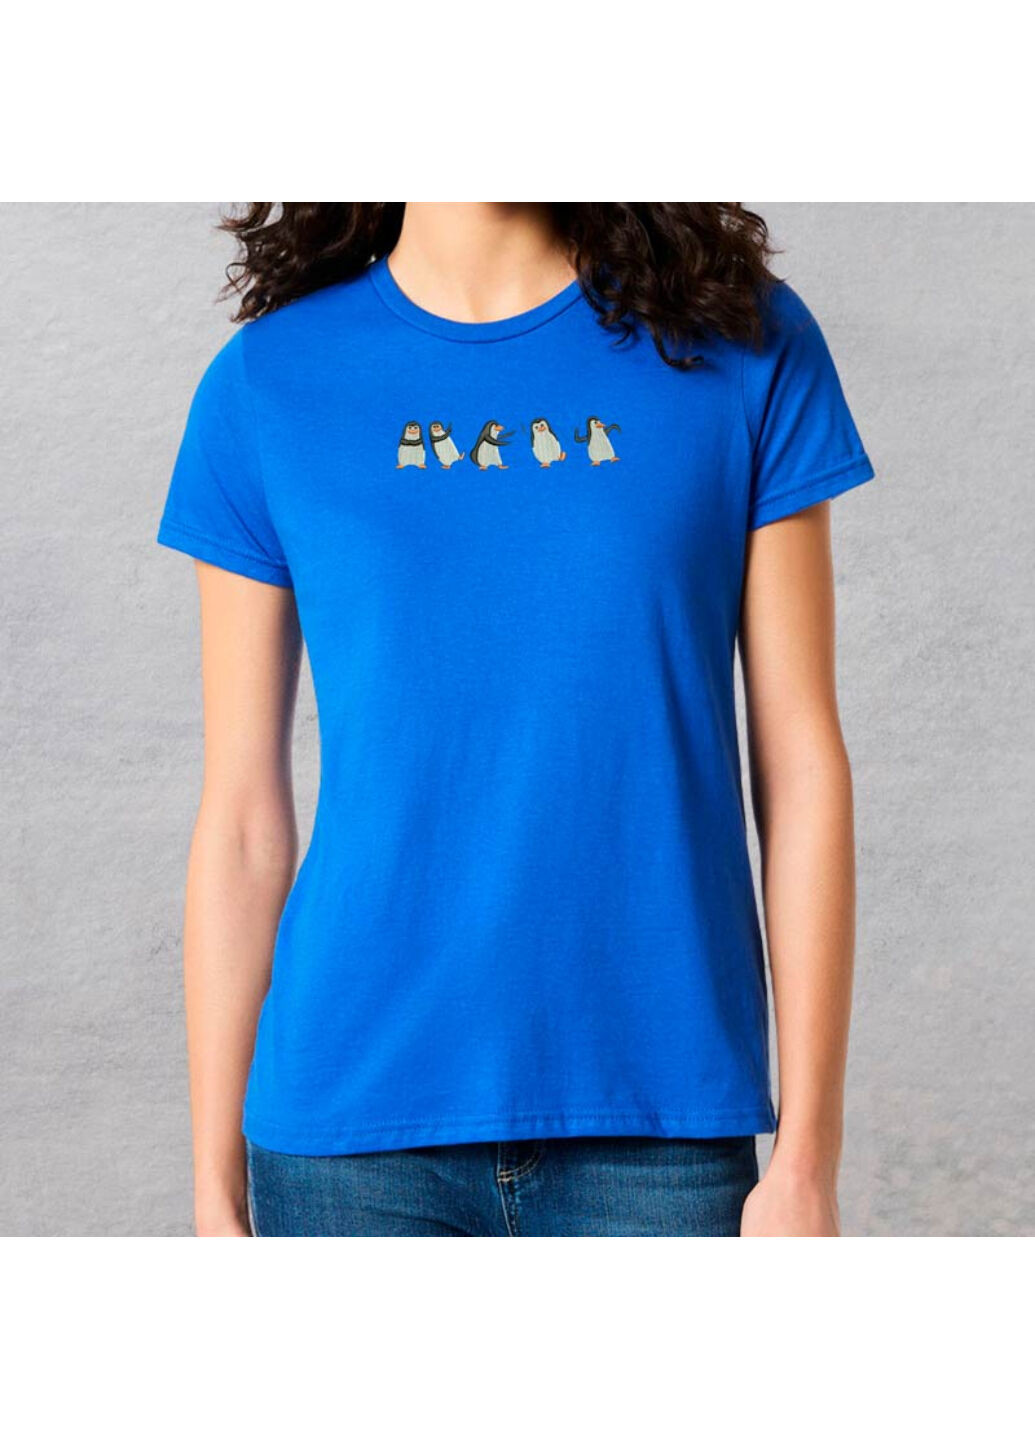 Синя футболка з вишивкою пінгвінів 02-3 жіноча синій m No Brand